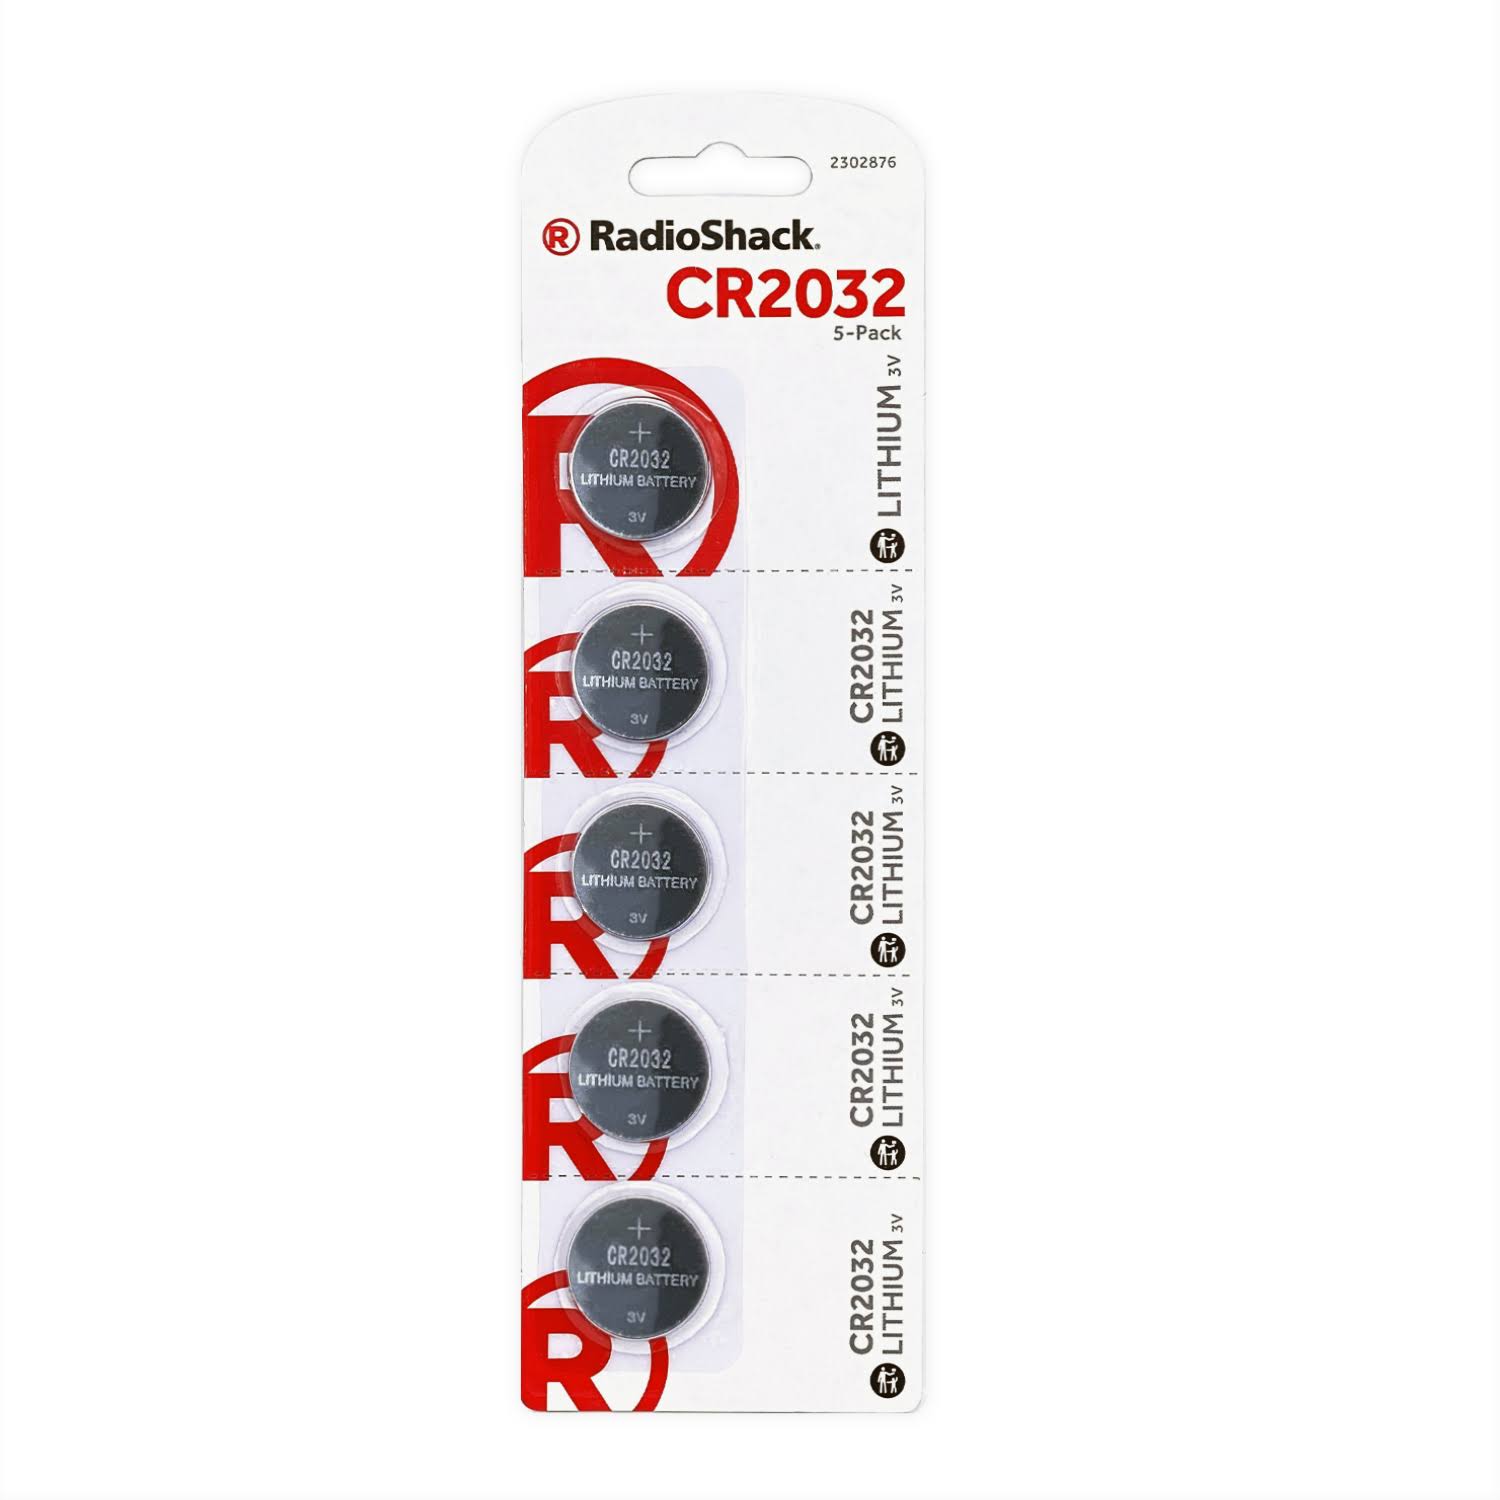 RadioShack CR2032 3V Lithium Coin Cell Batteries (5-Pack) 2302876